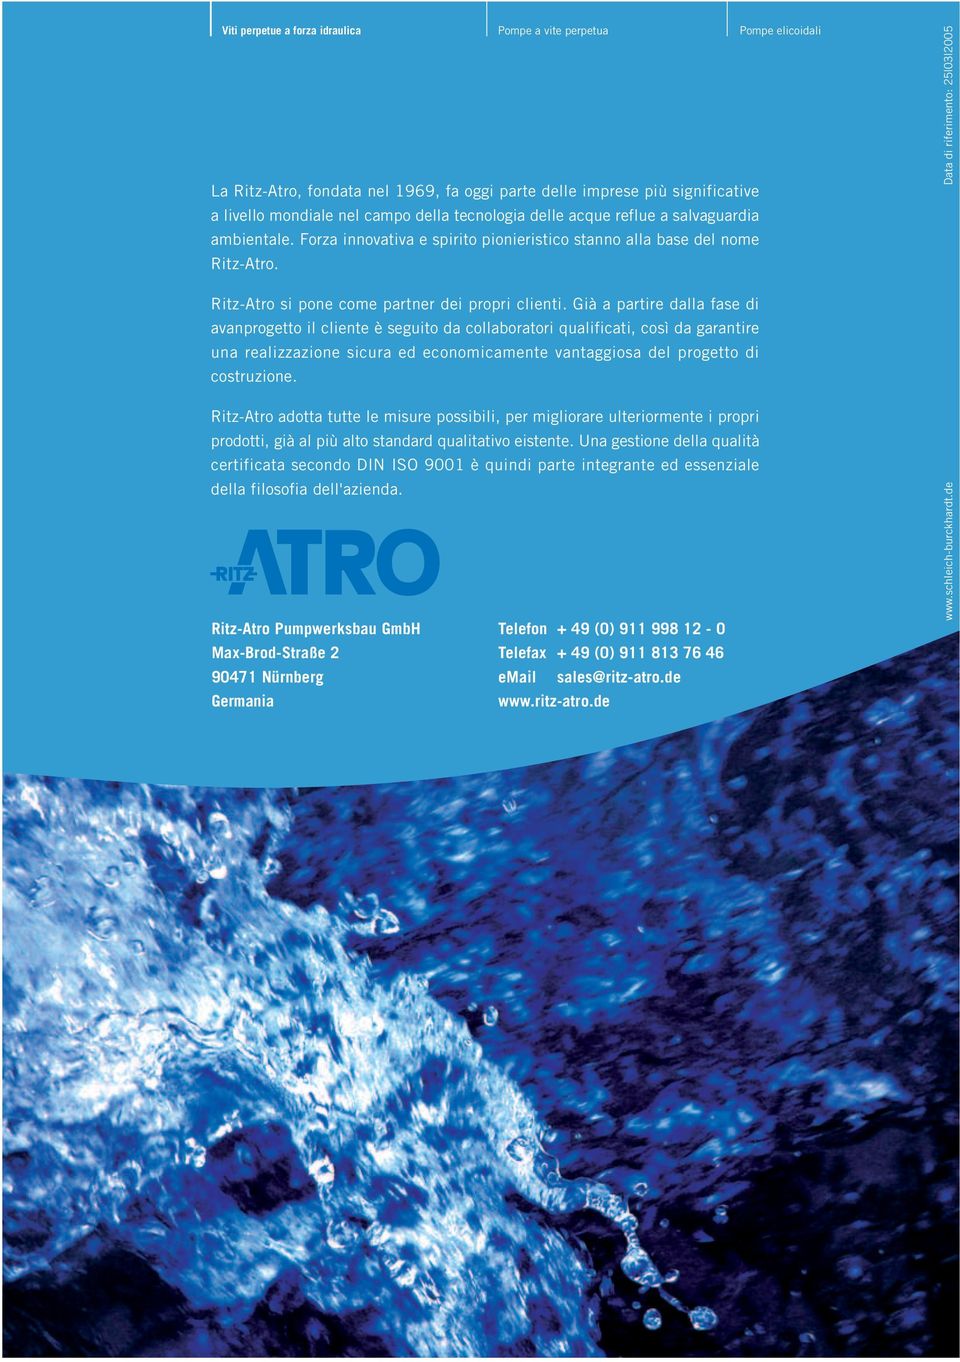 Data di riferimento: 25 03 2005 Ritz-Atro si pone come partner dei propri clienti.